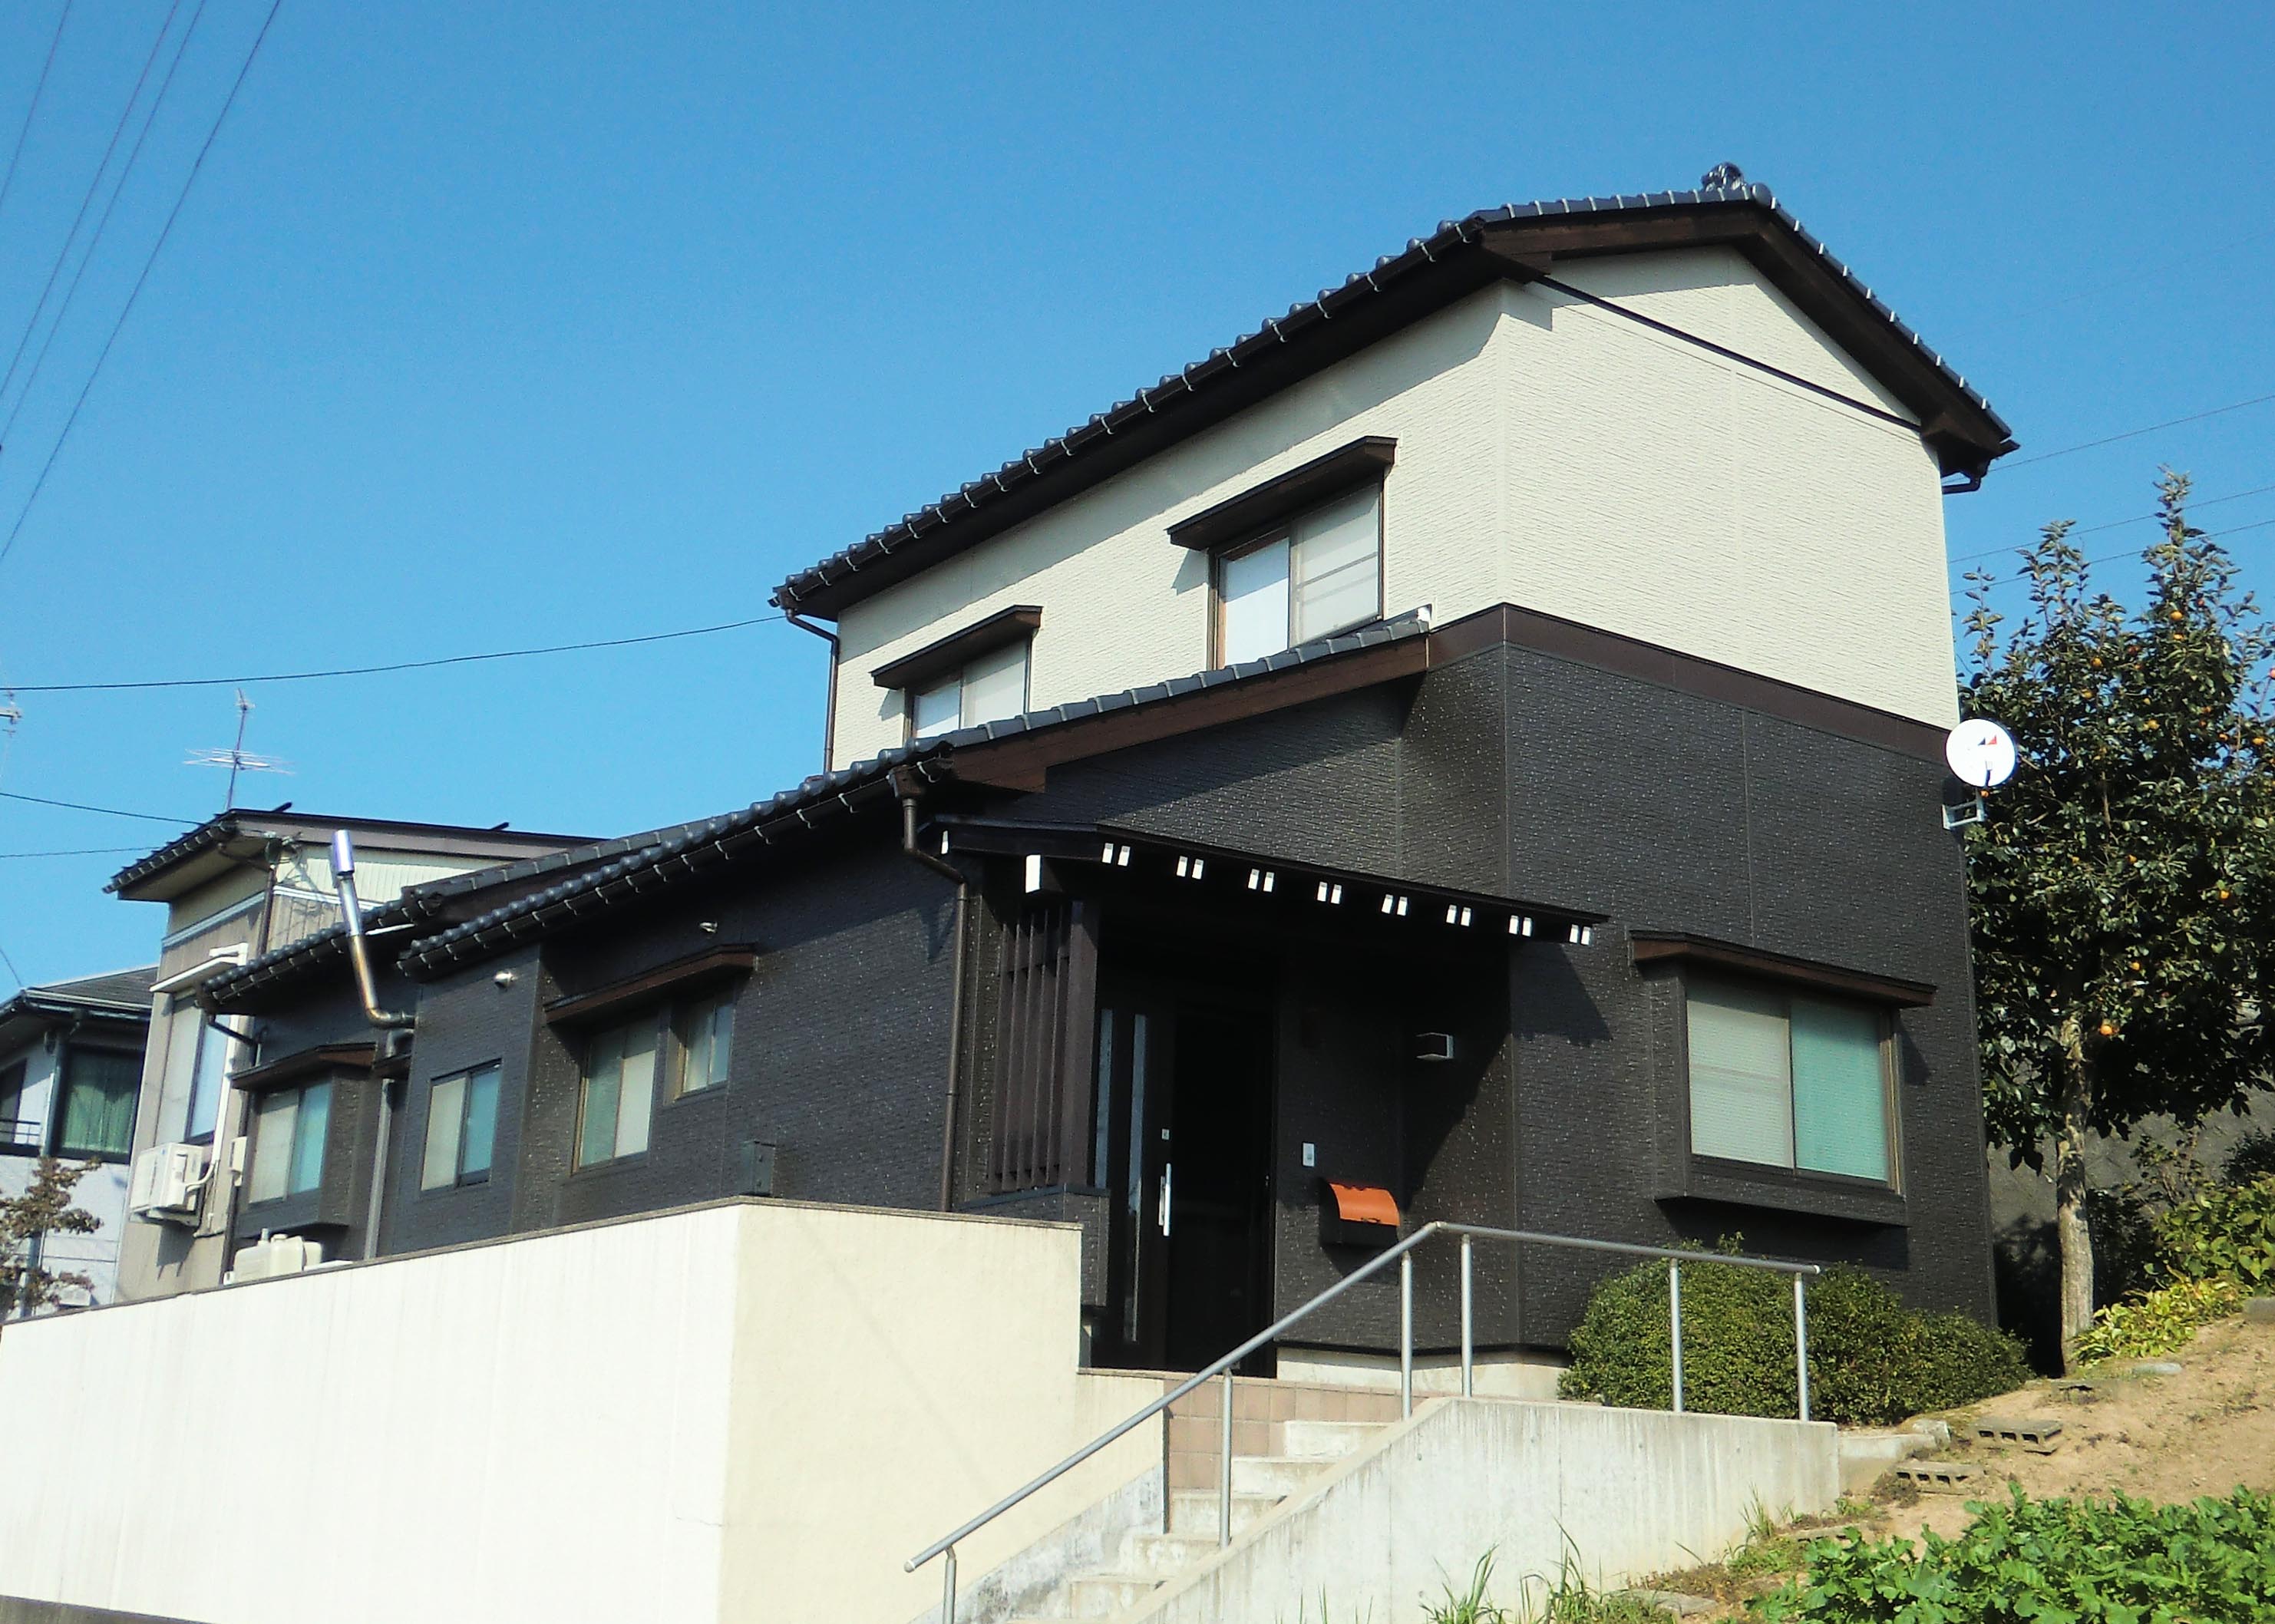 富山市 Gs 0060 外壁サイディング 屋根瓦葺き替え工事 富山 石川県でリフォームをお考えならオリバーへお任せ下さい